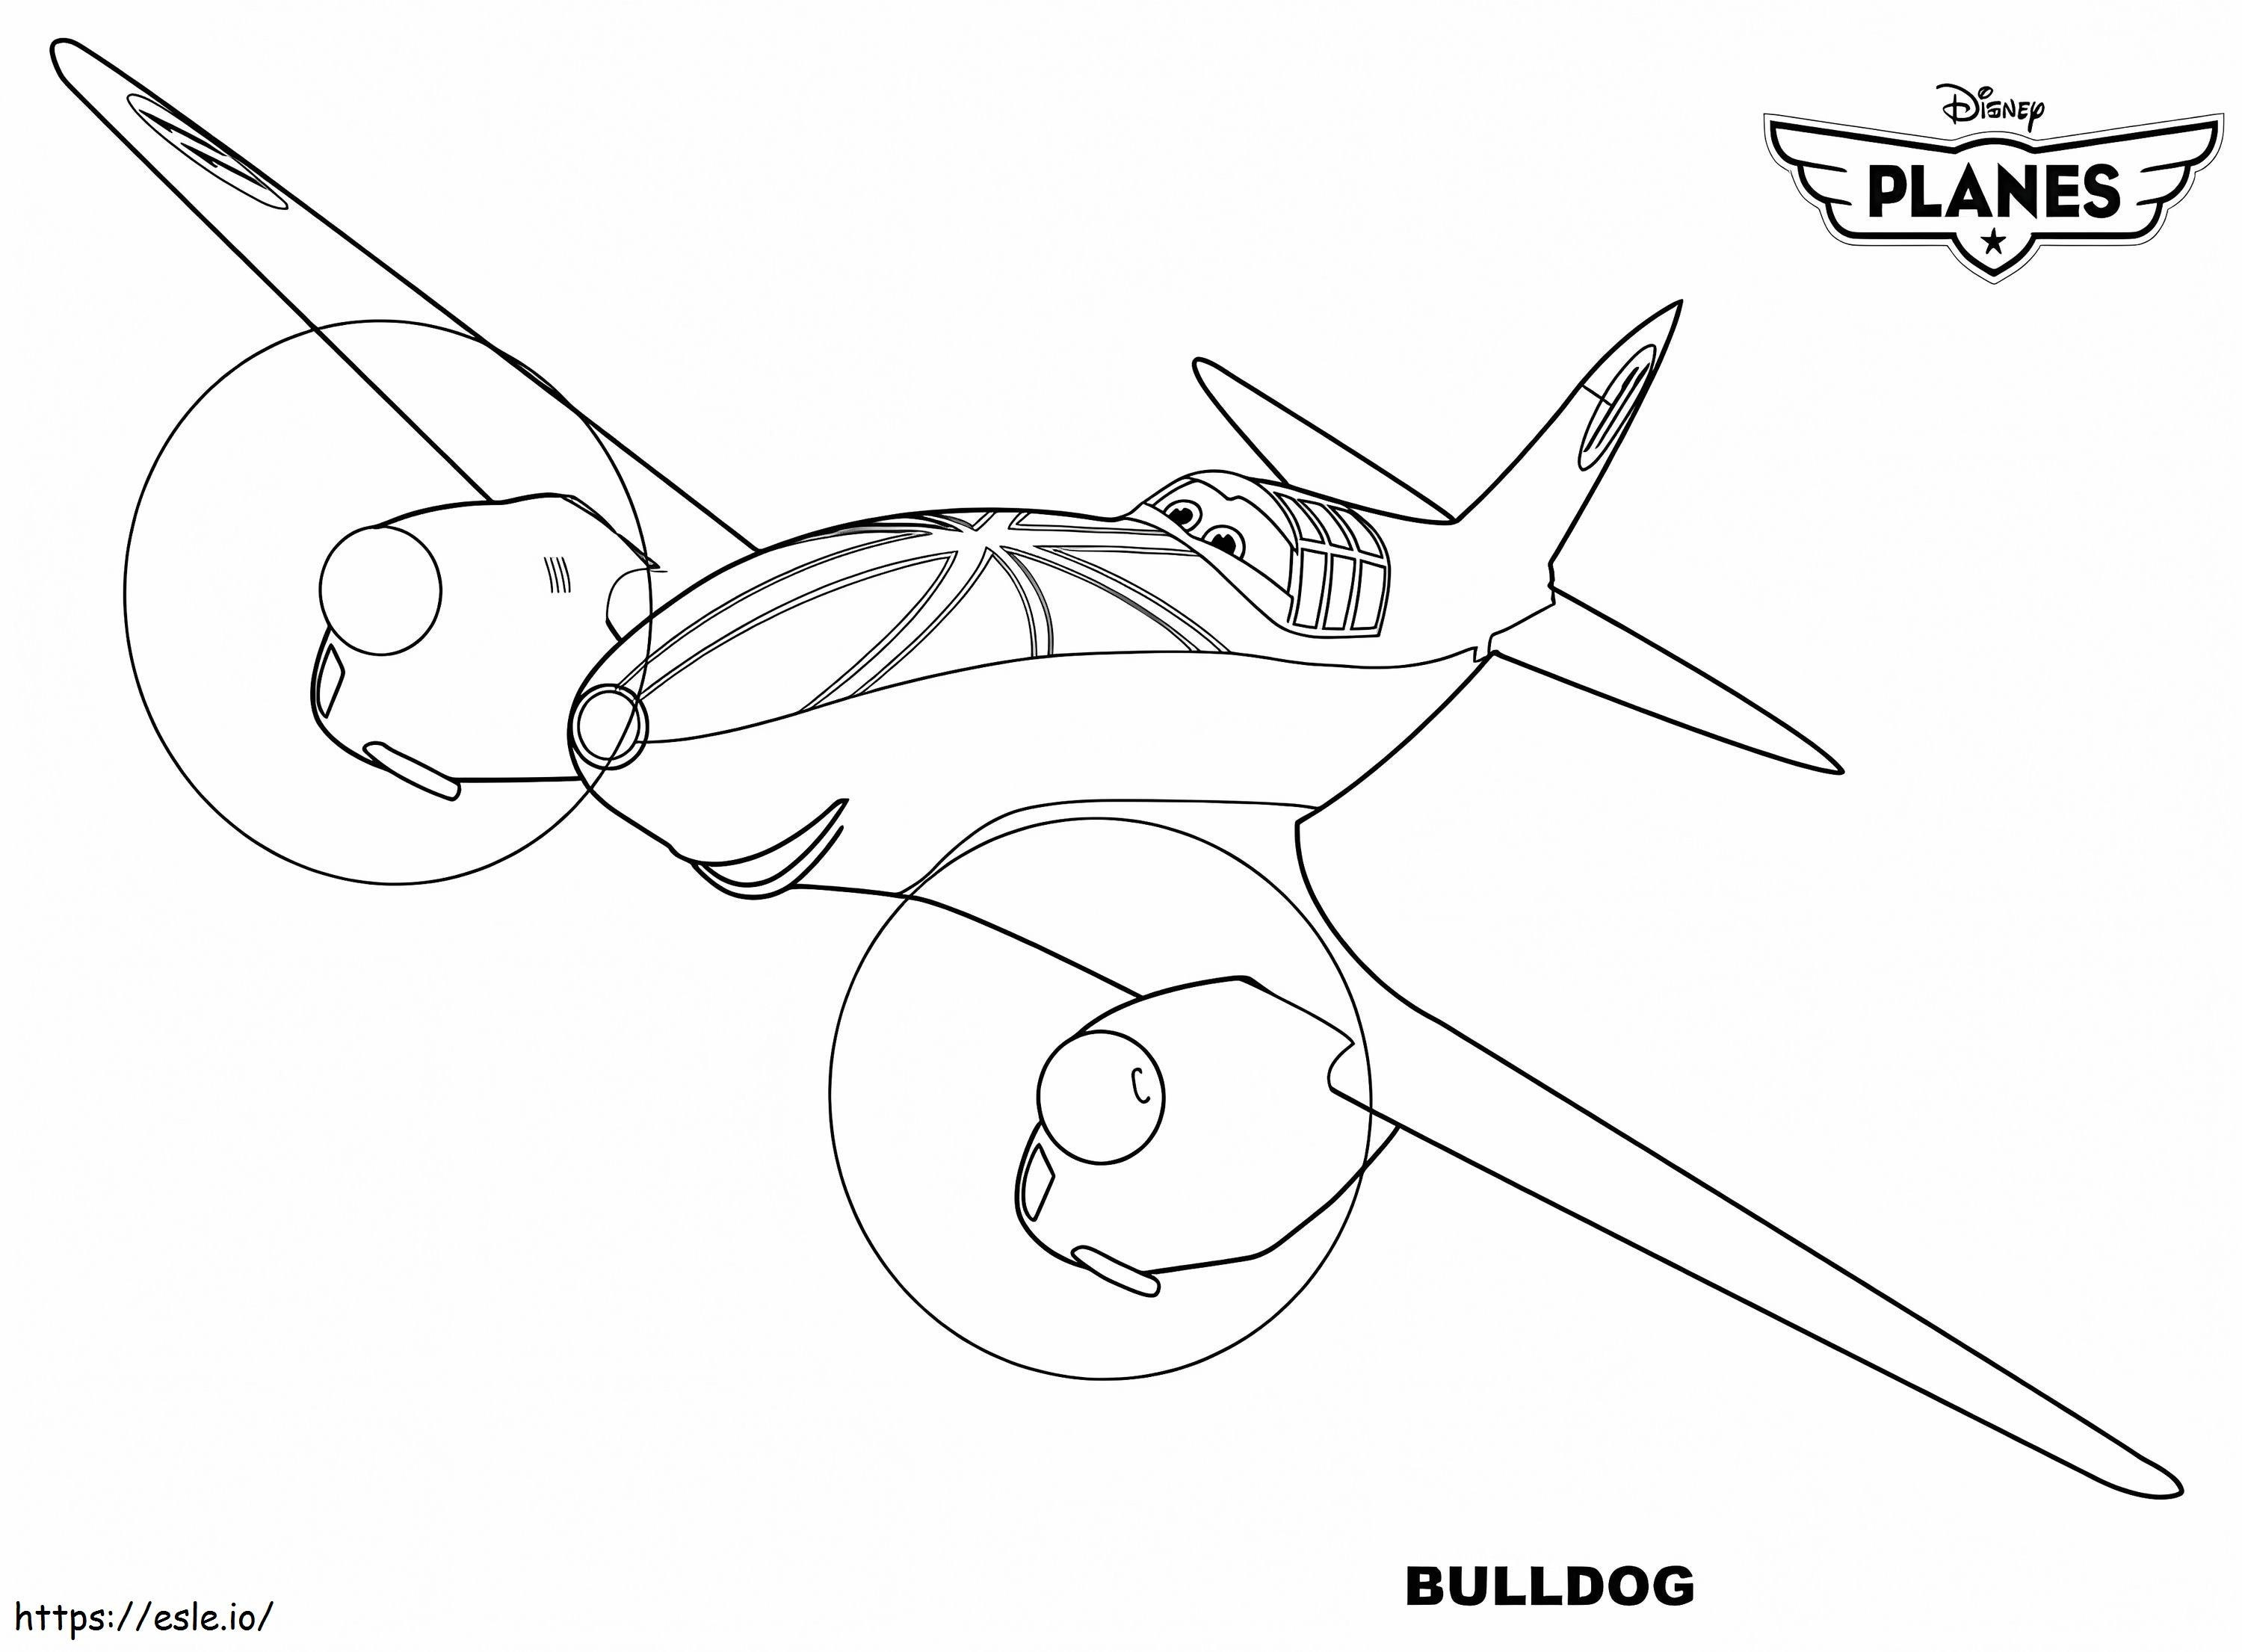 Bulldog Repülőgép kifestő